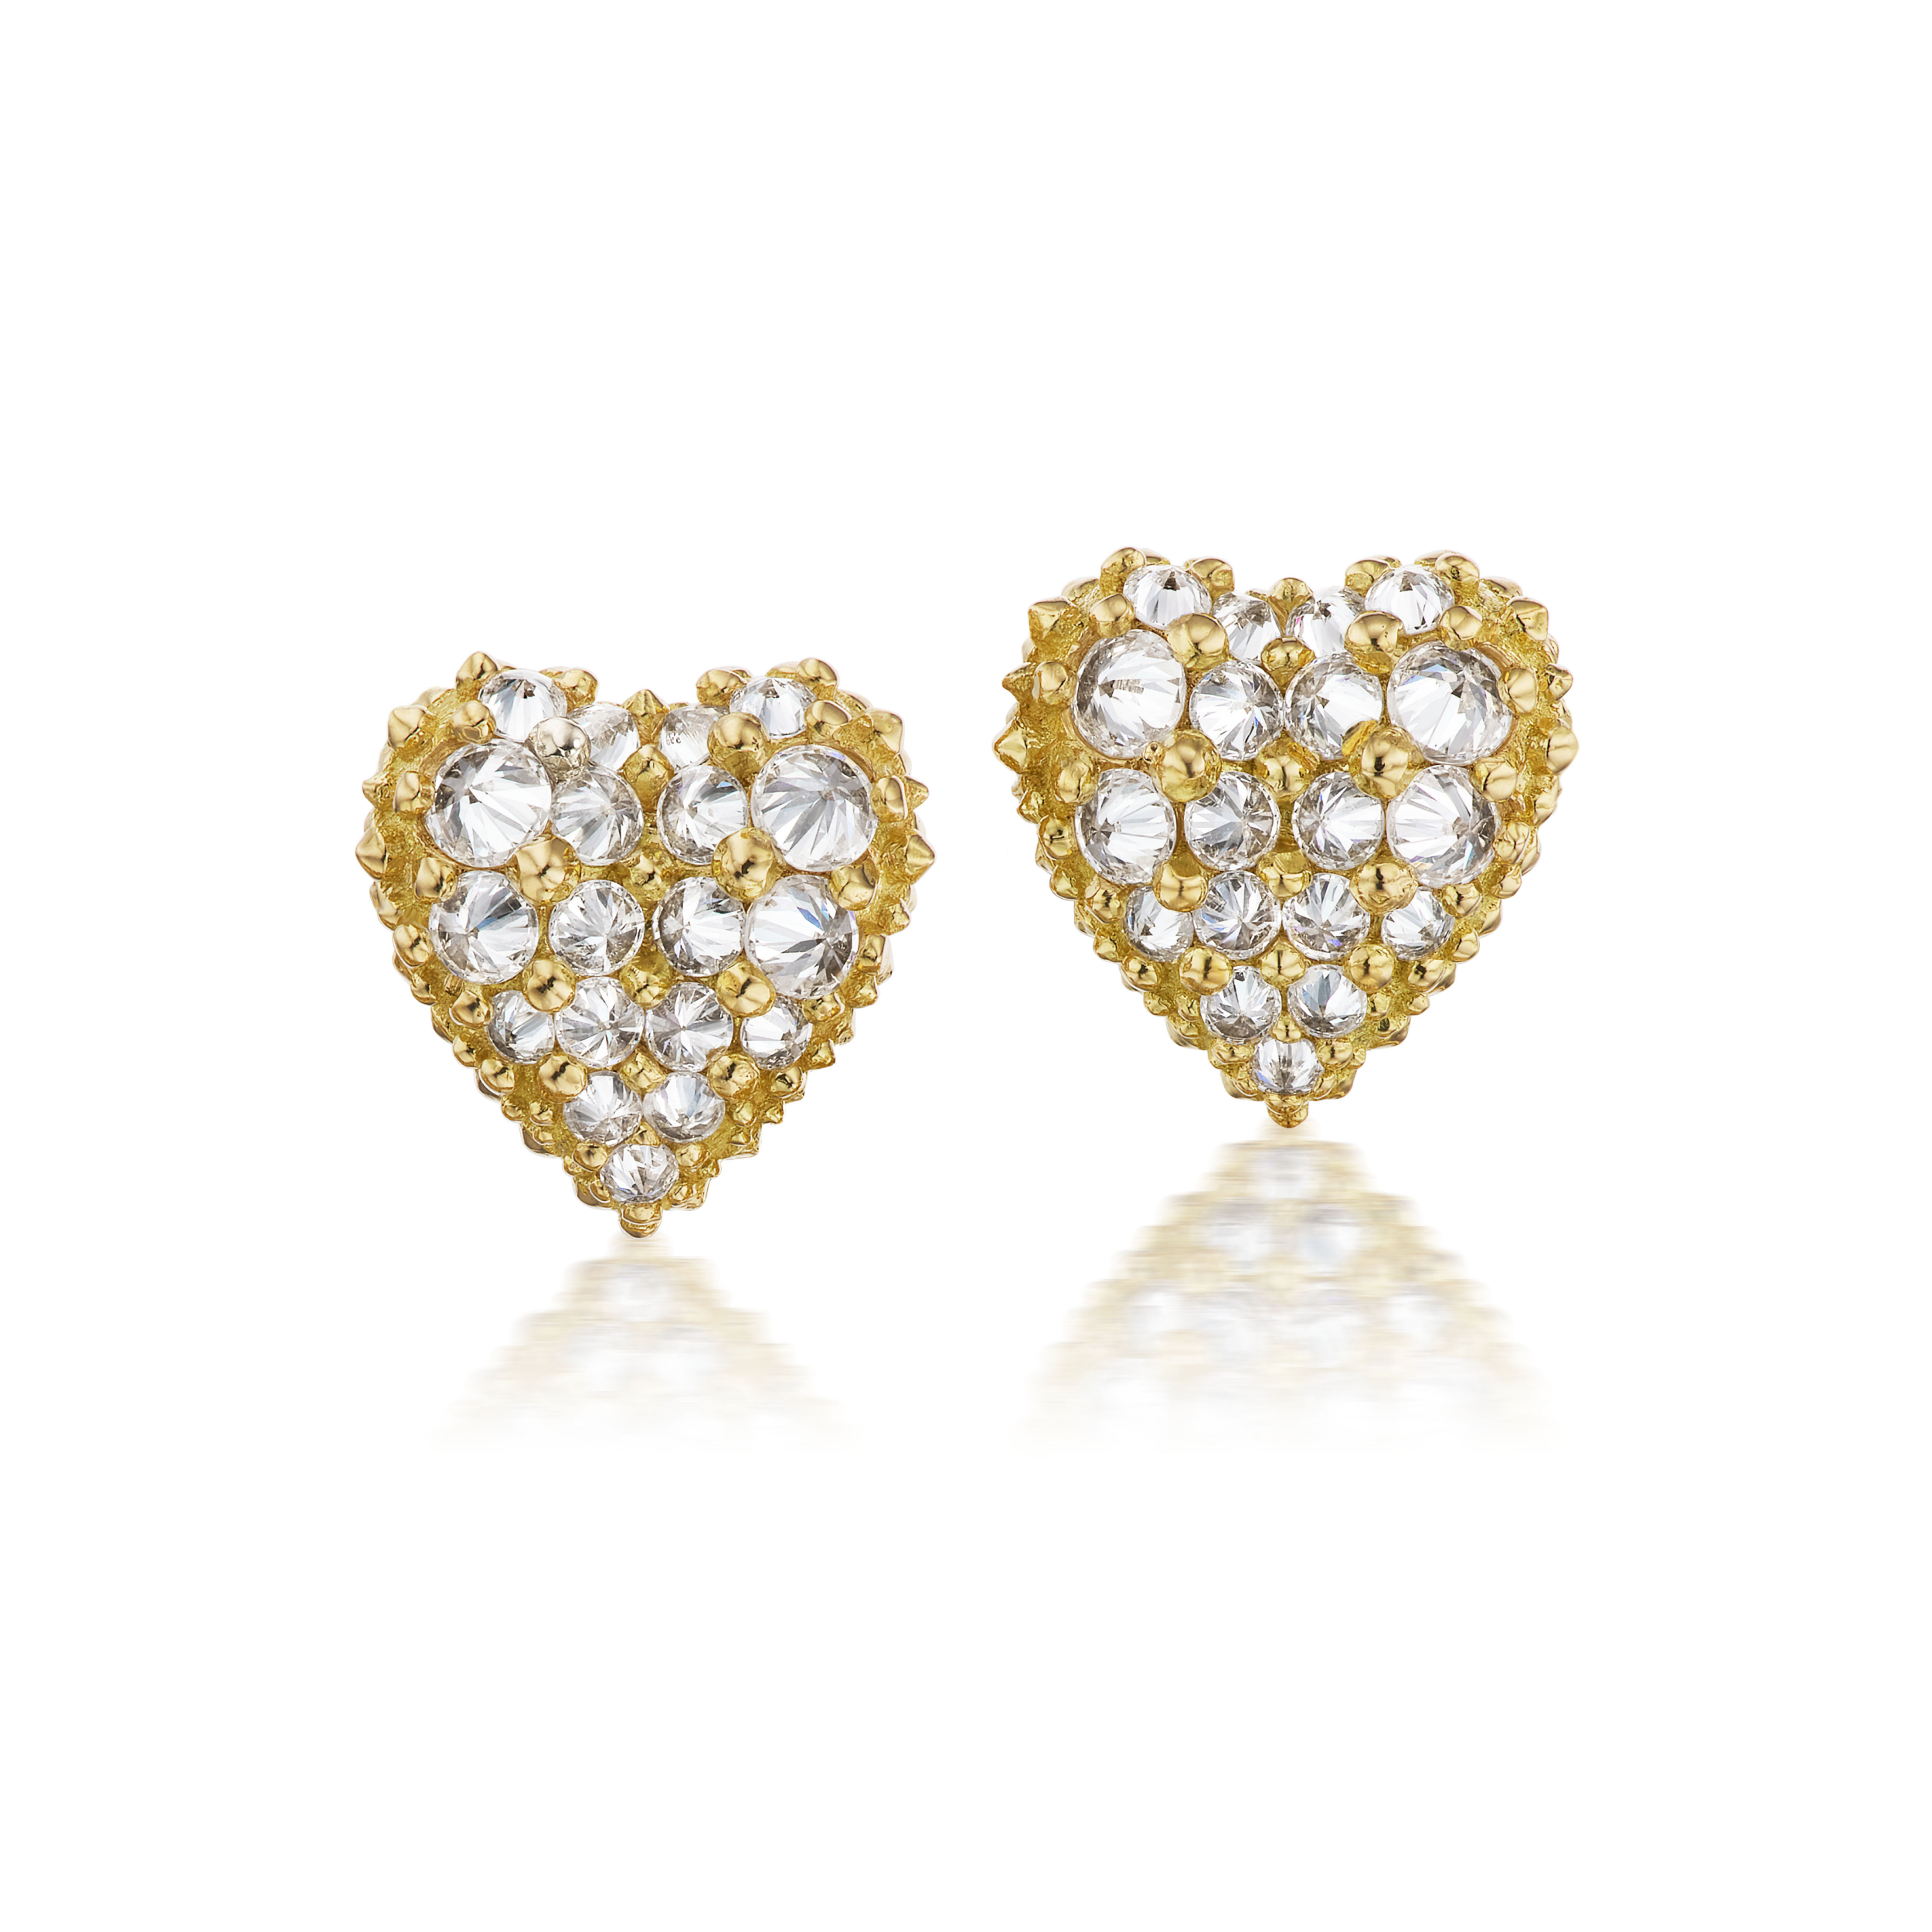 Latest heart shape gold earring design/heart small gold earring design/stud  gold earring design - YouTube